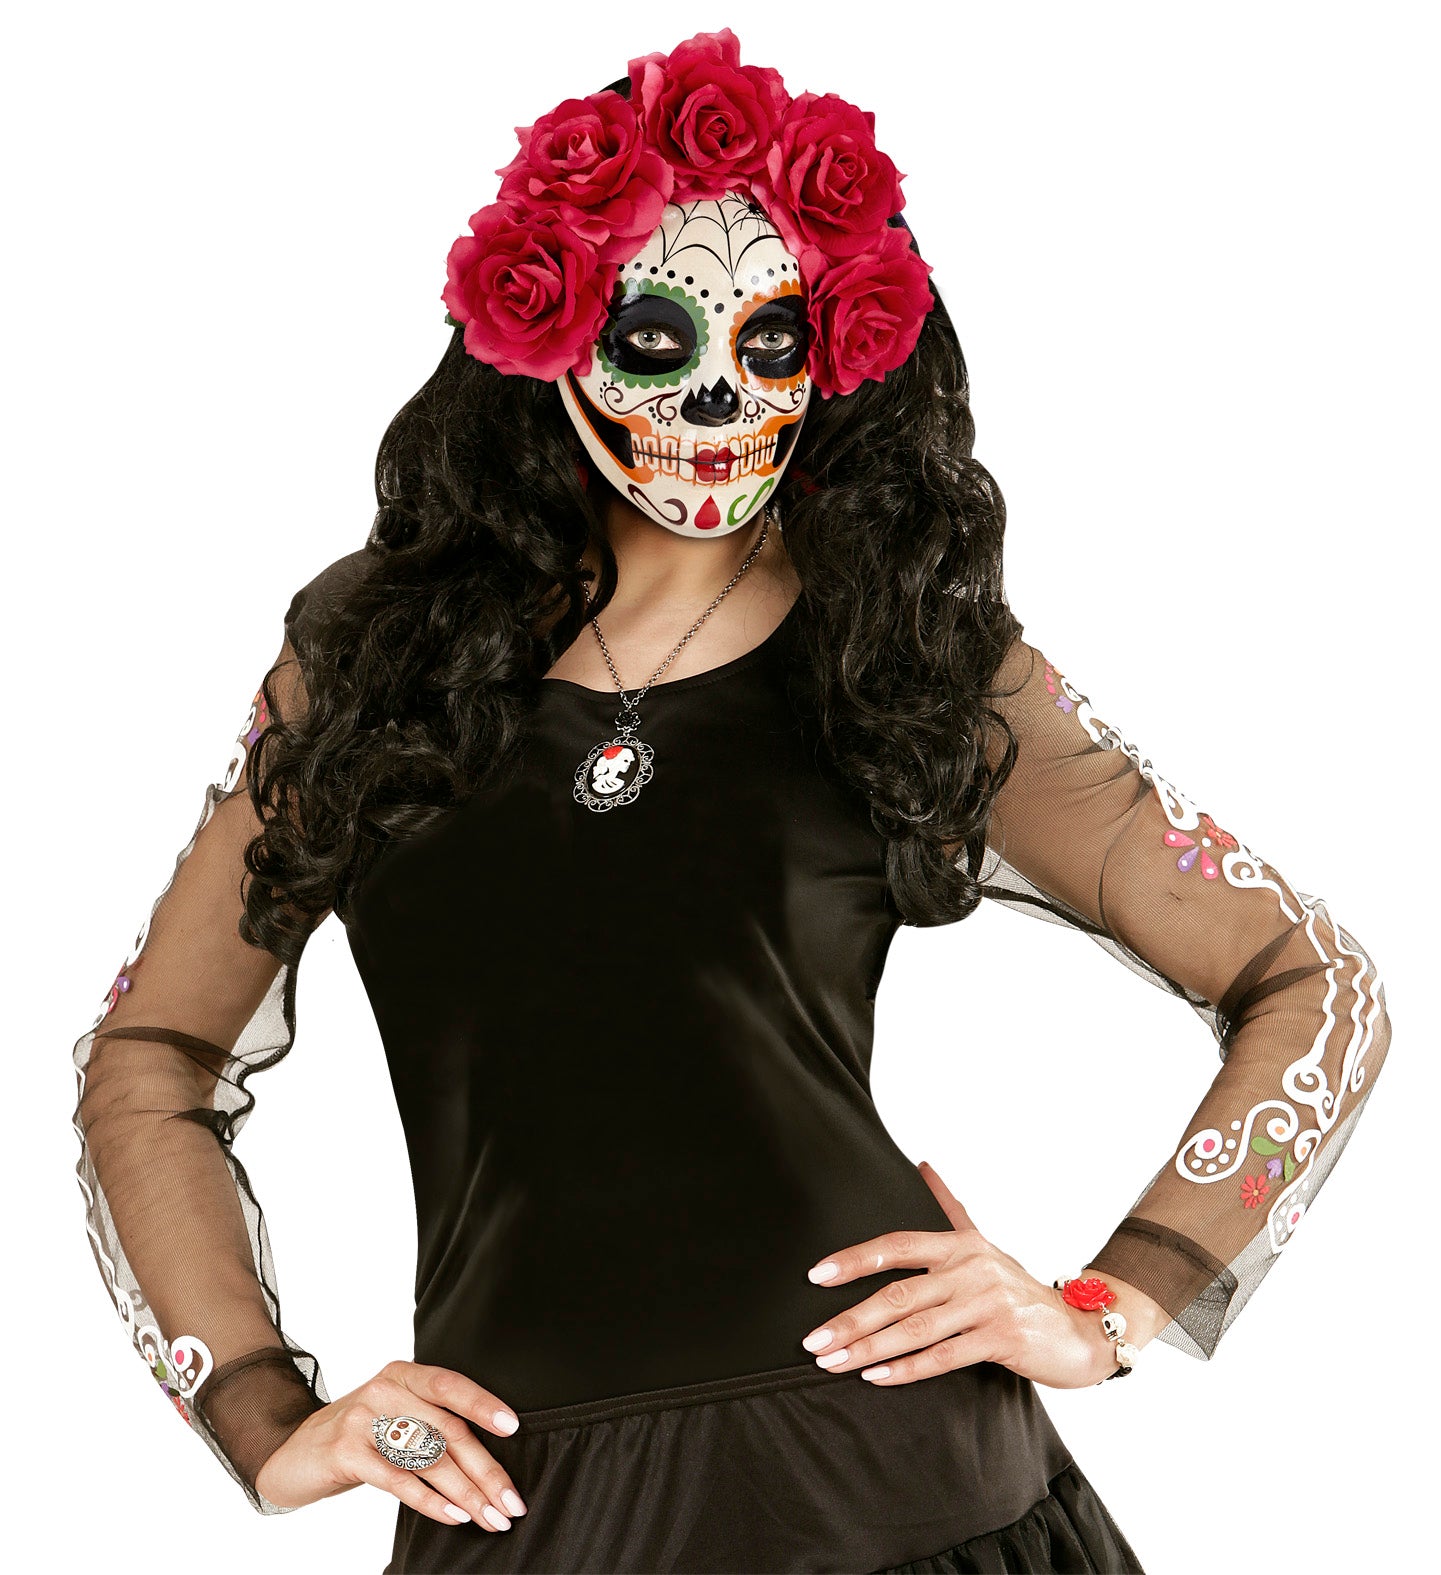 Día de Muertos mask headpiece with roses